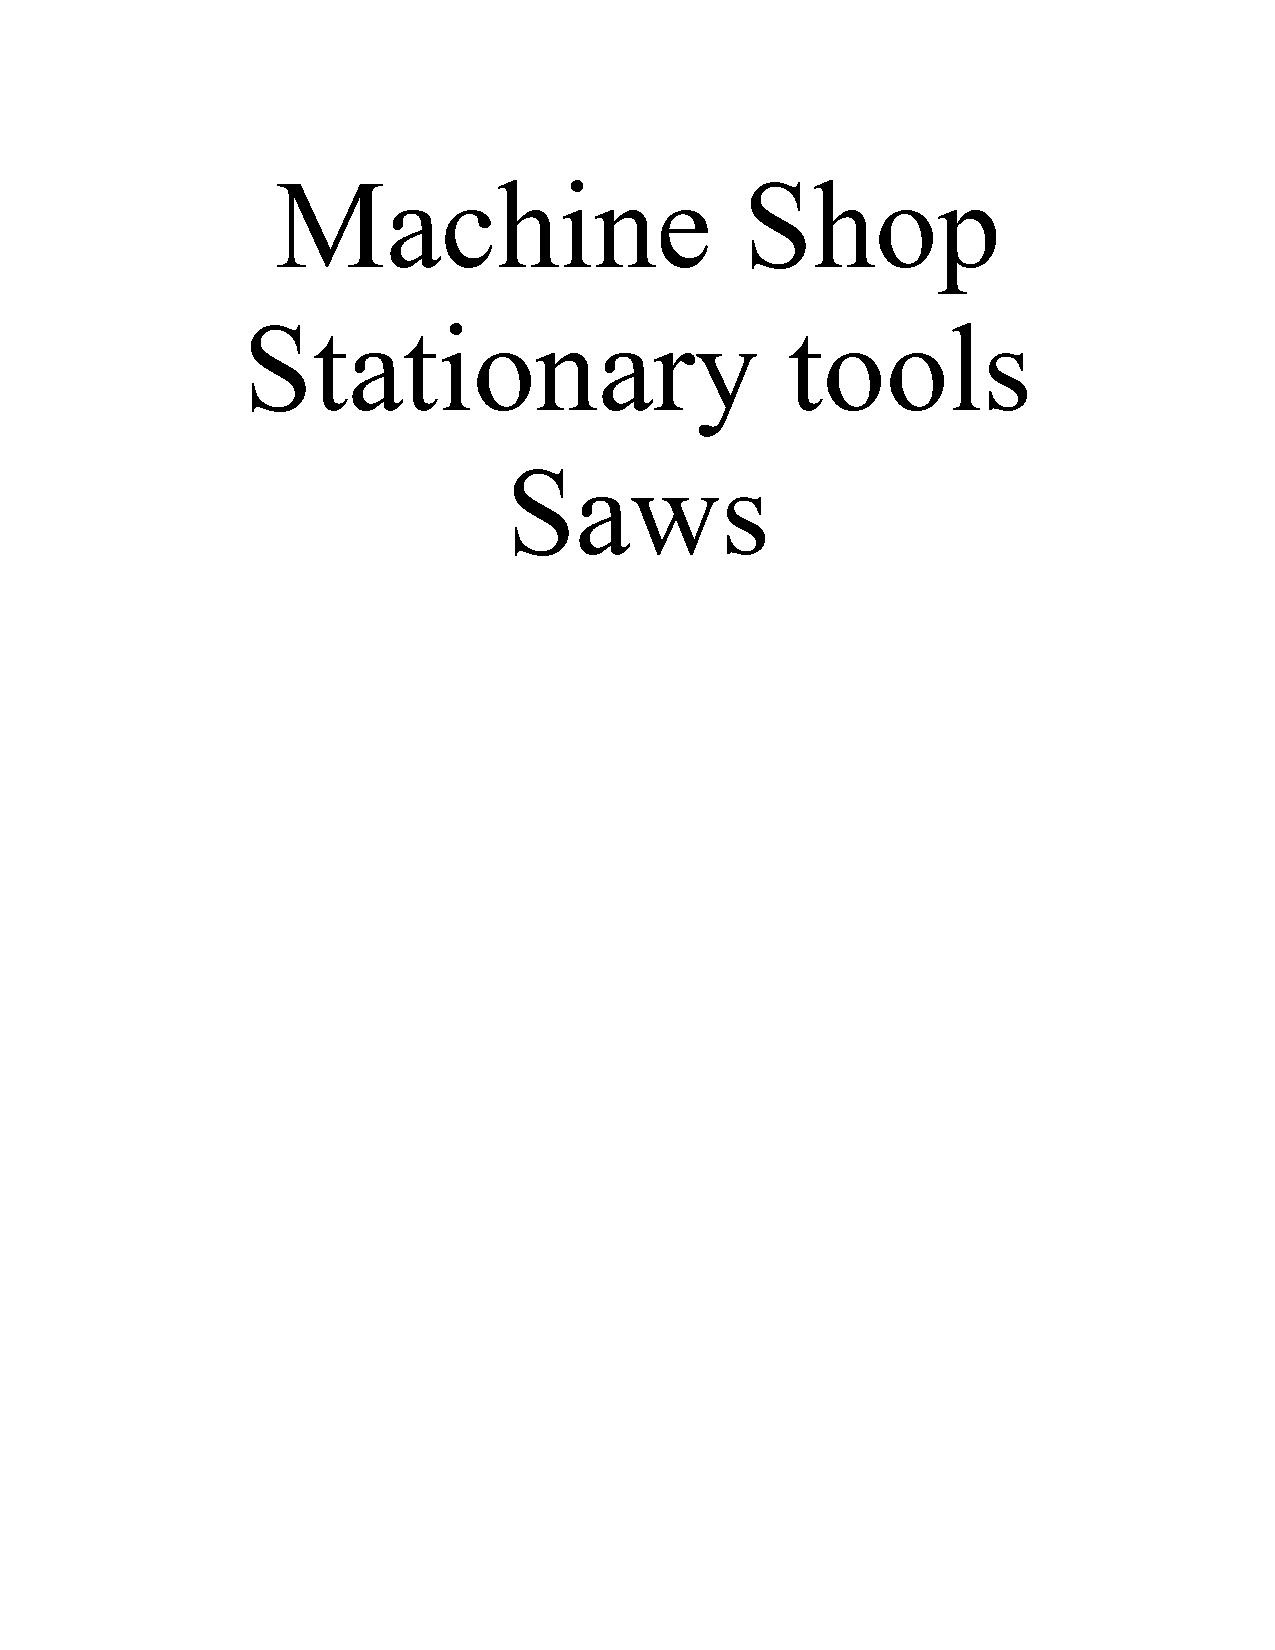 Machine Stationary Saws.pdf